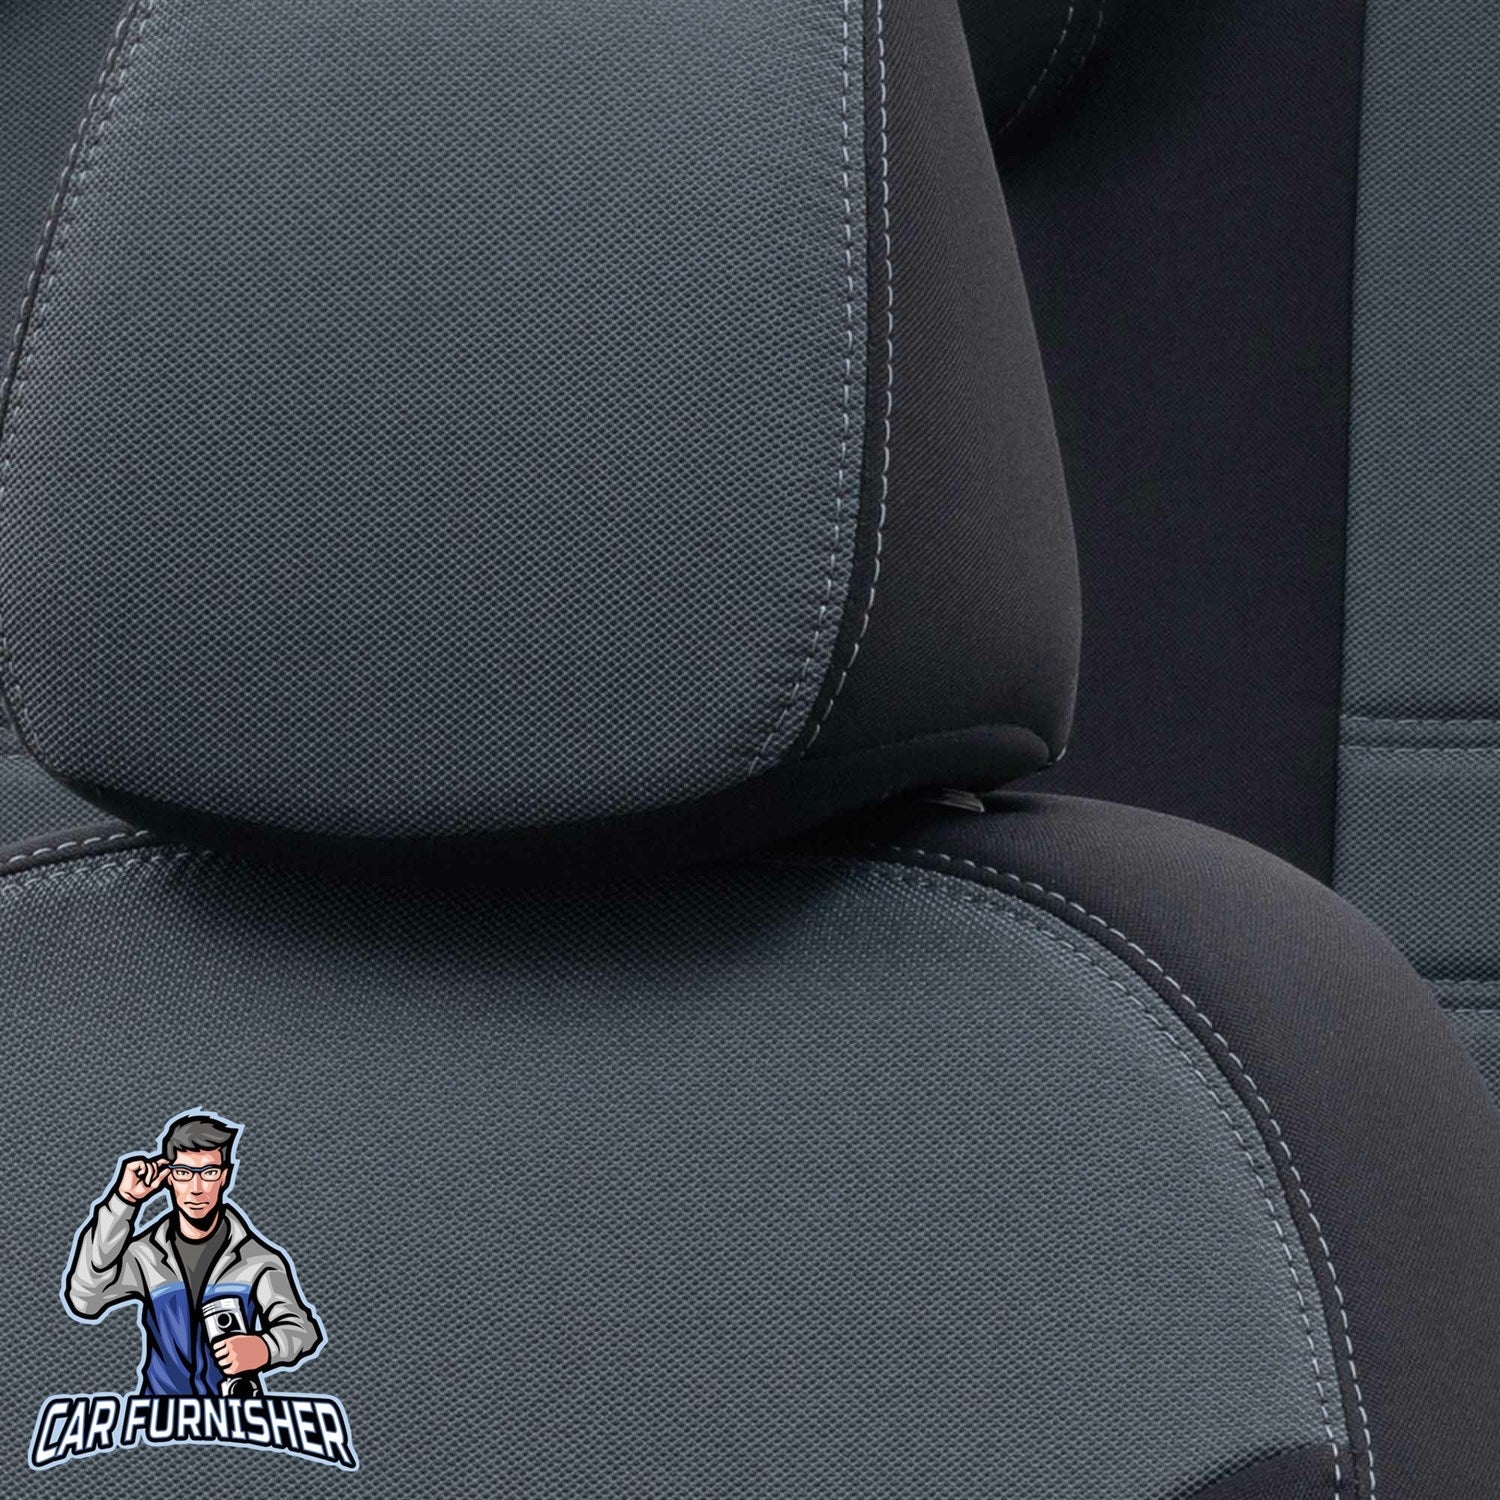 Jeep Grand Cherokee Seat Cover Original Jacquard Design Smoked Black Jacquard Fabric